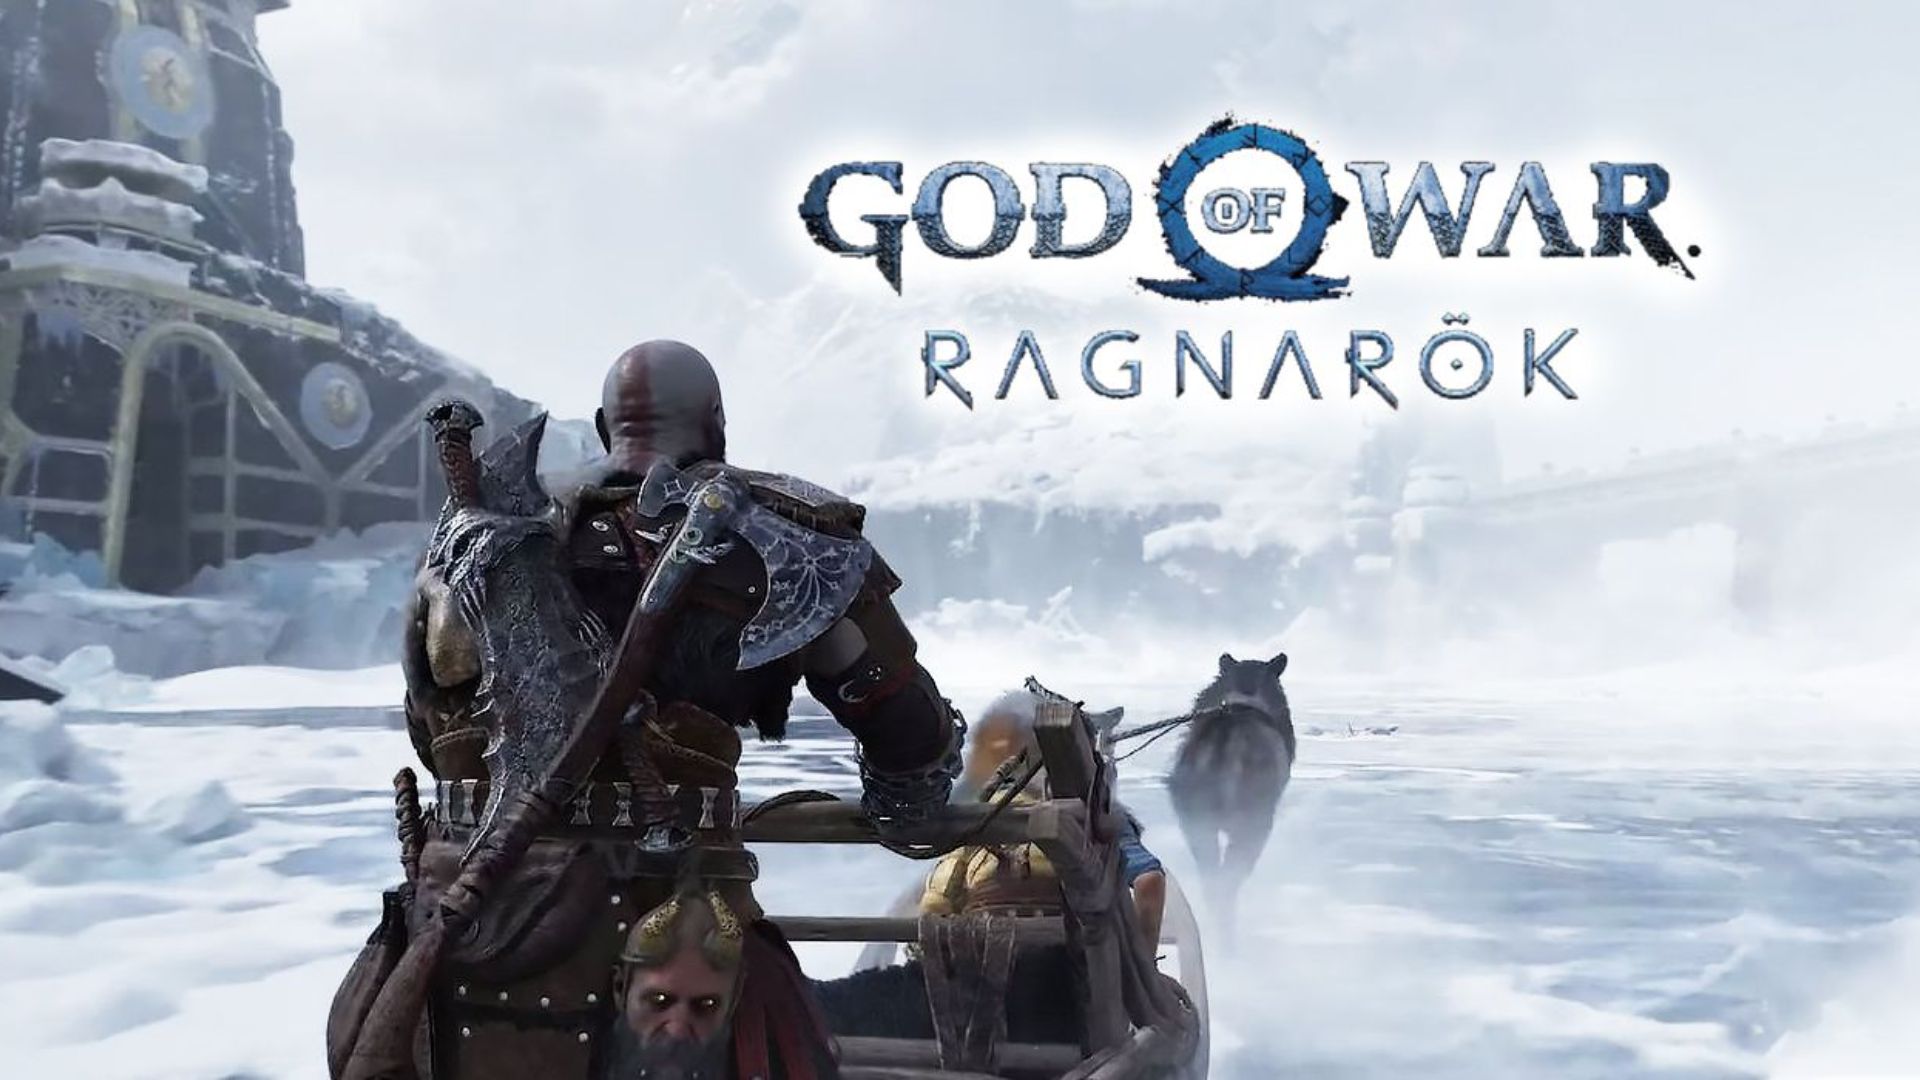 God of War Ragnarok Wallpapers - Top 25 Best God of War Ragnarok Backgrounds  Download